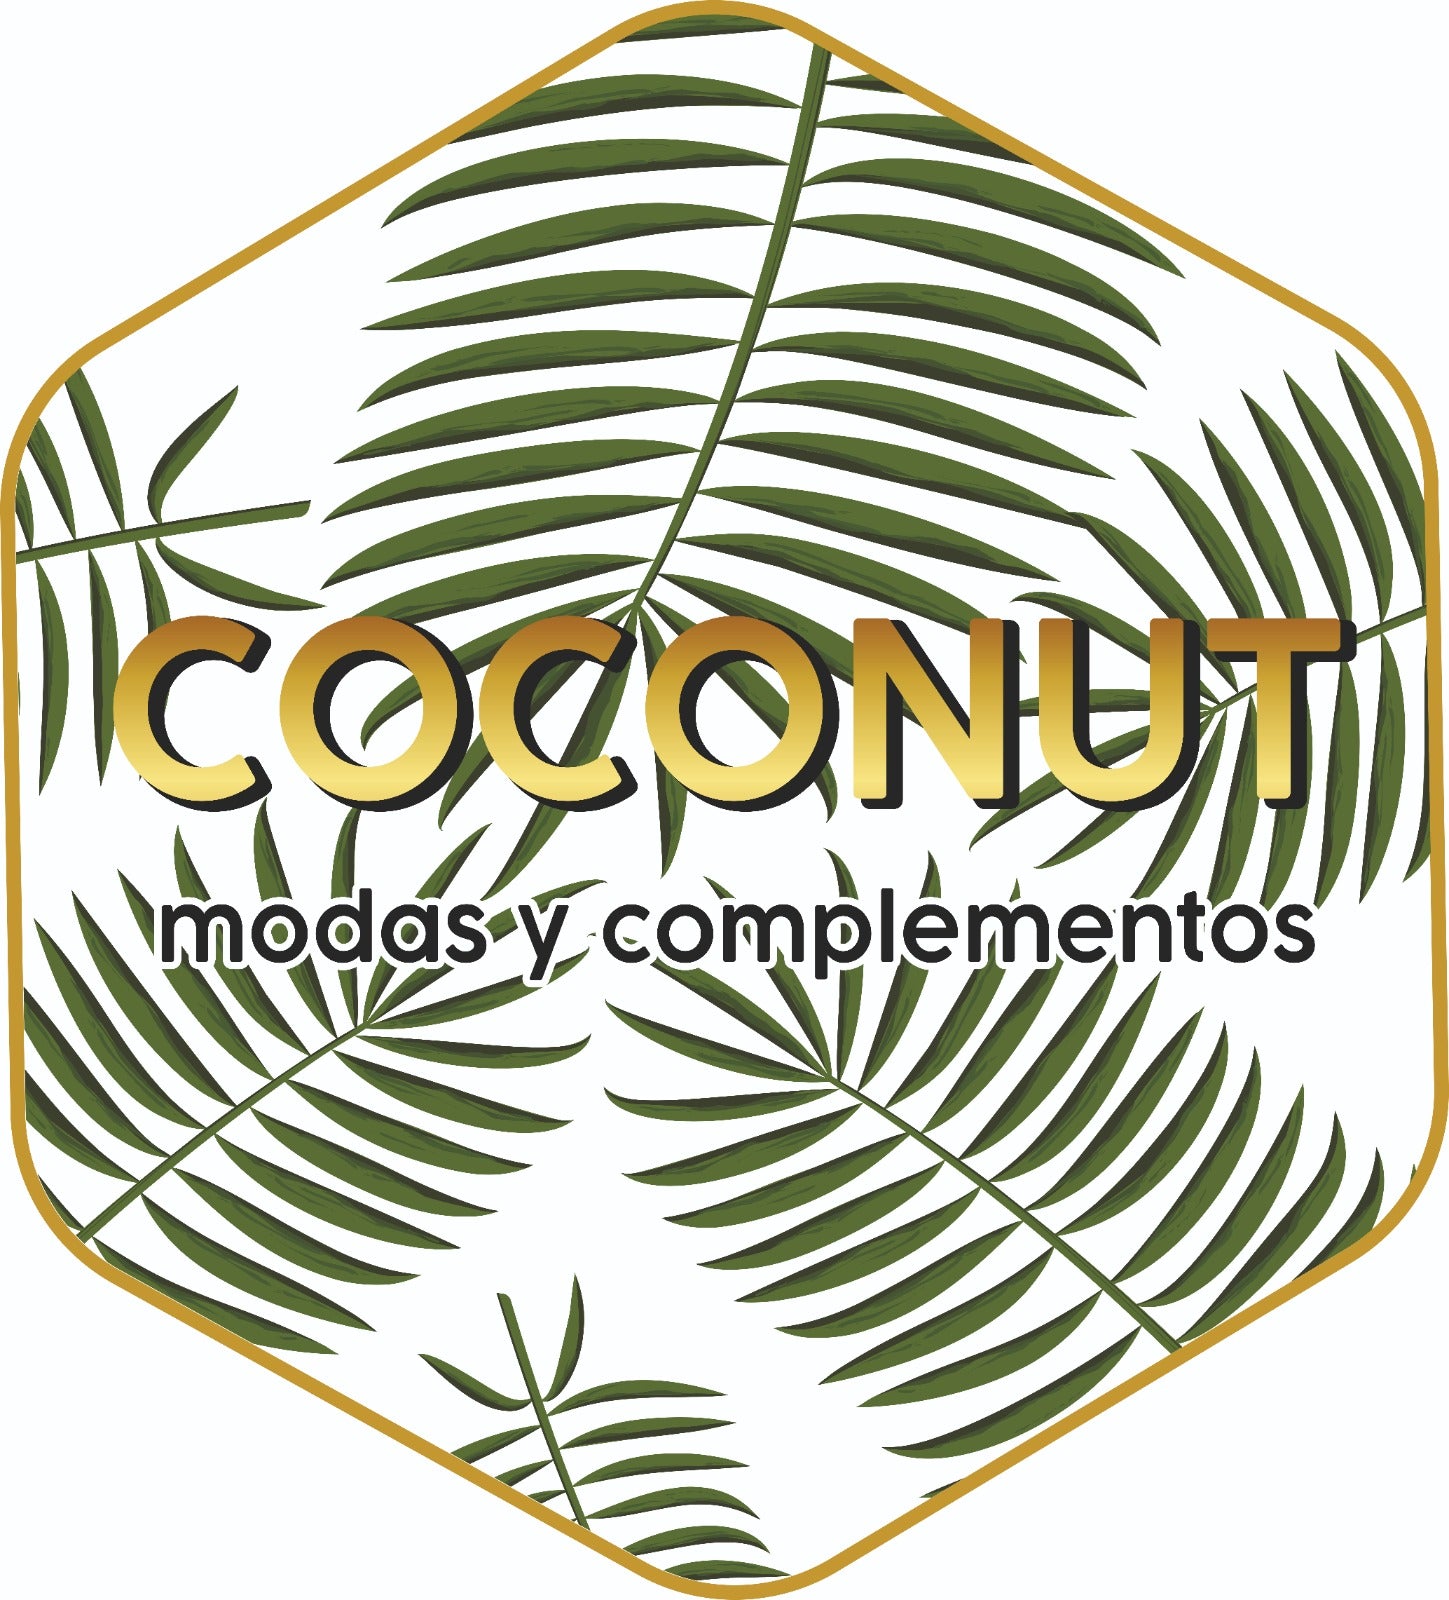 Coconut Modas